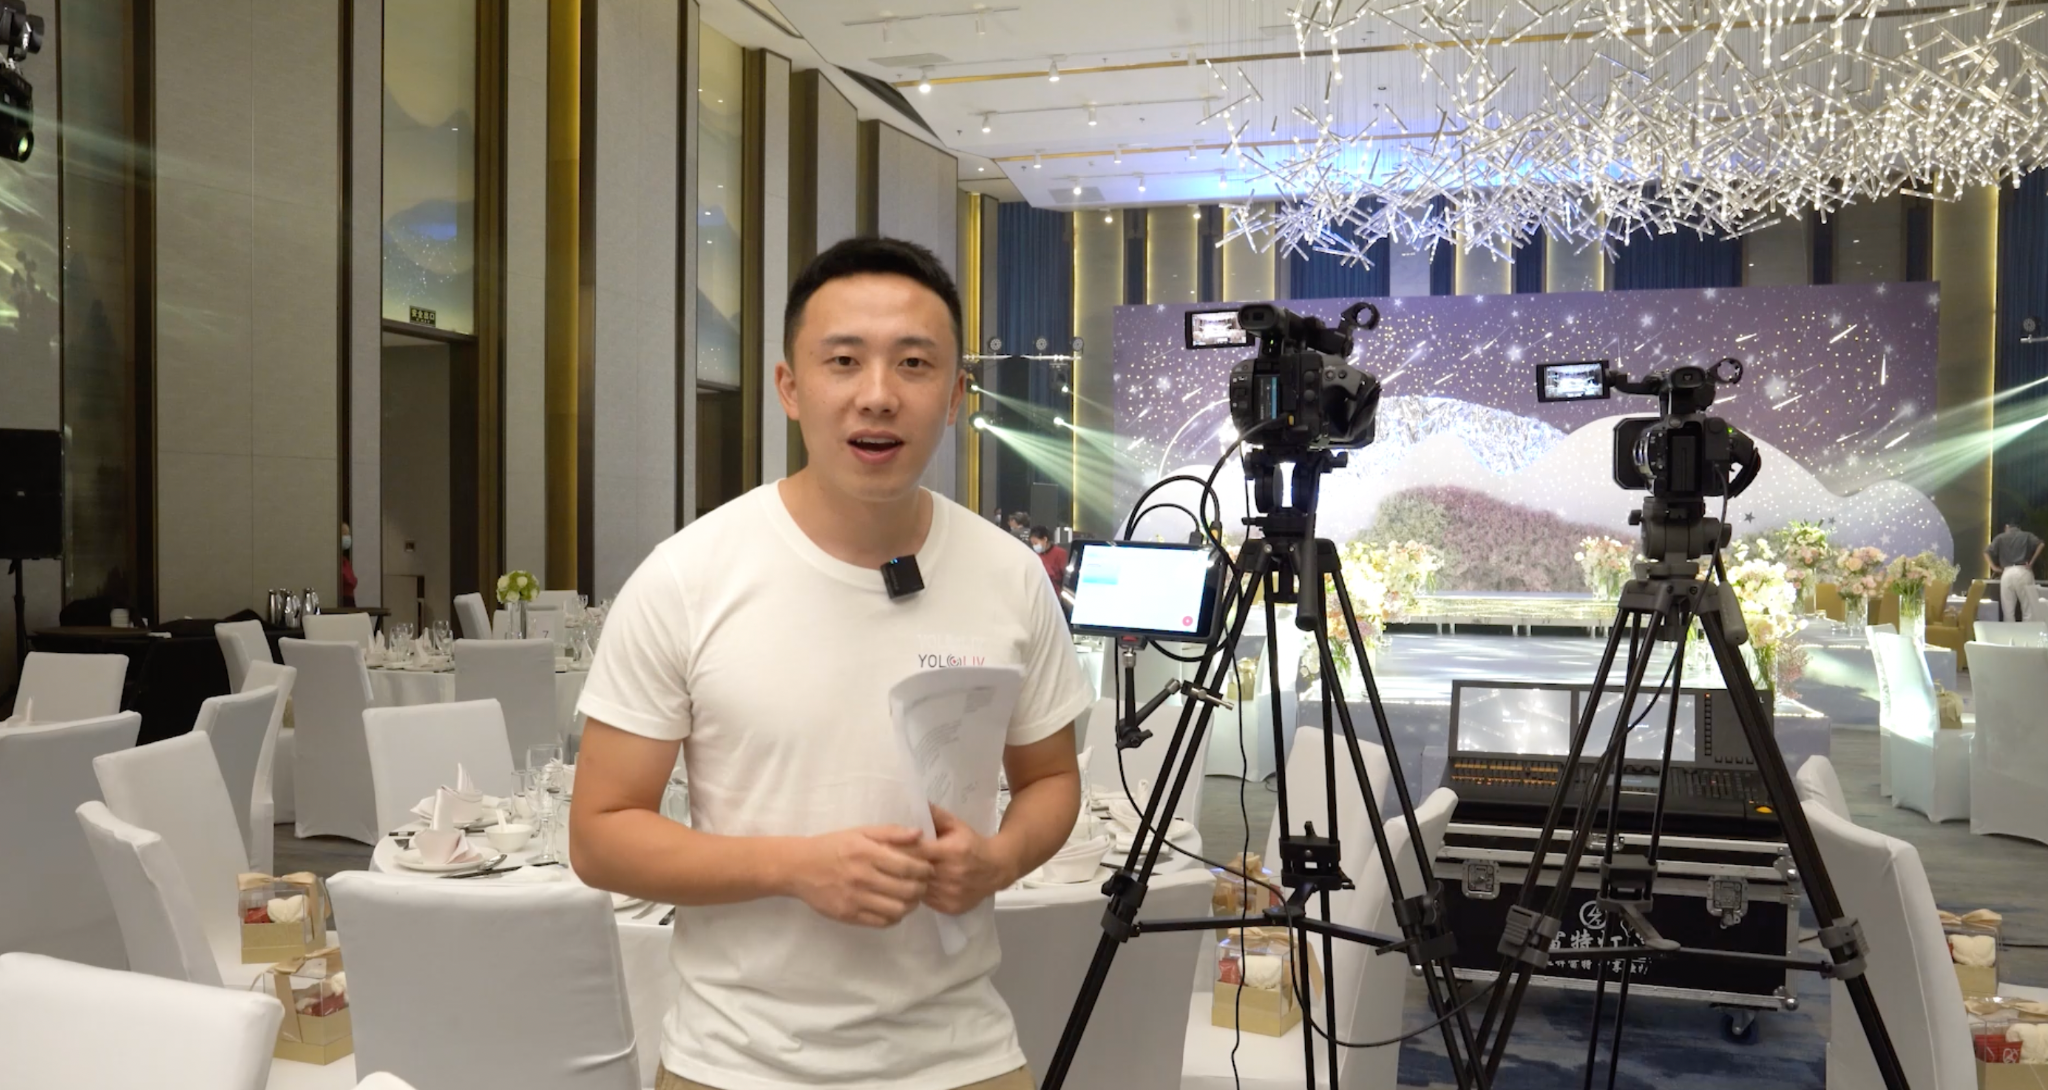 Using Sony Cameras to Livestream a Wedding Ceremony